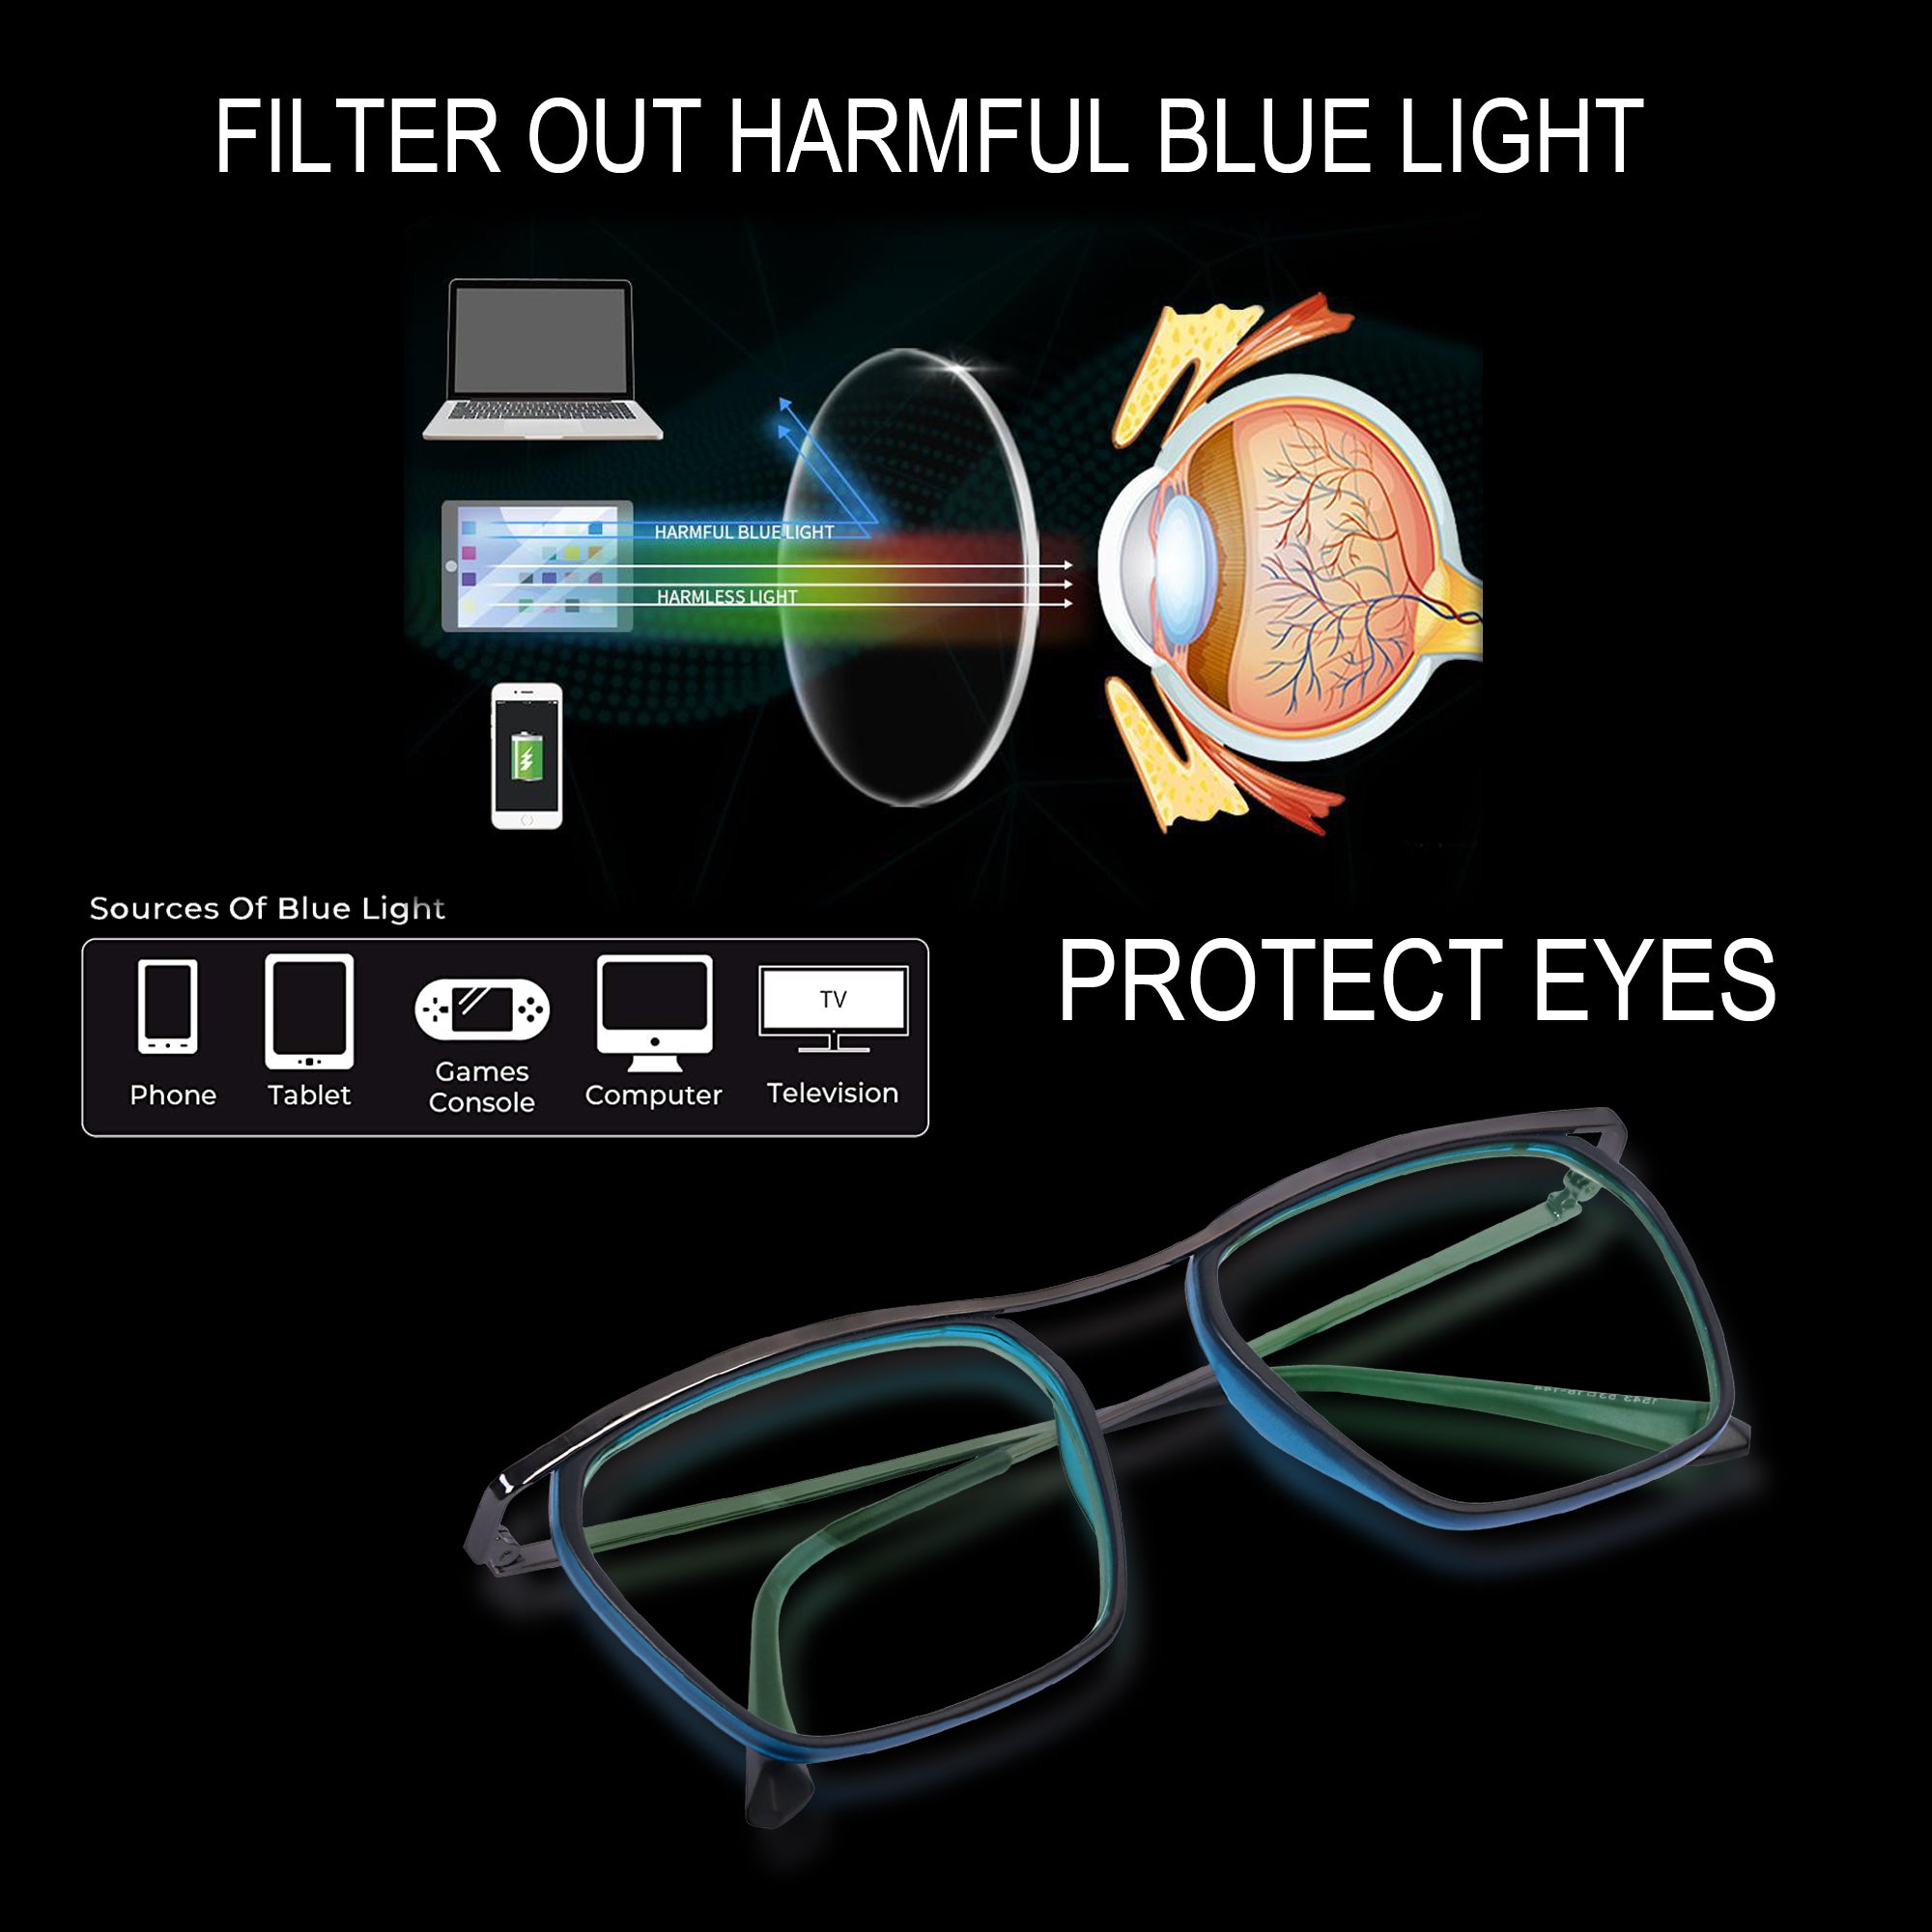 Black & Blue Square Rimmed Eyeglasses - L1543